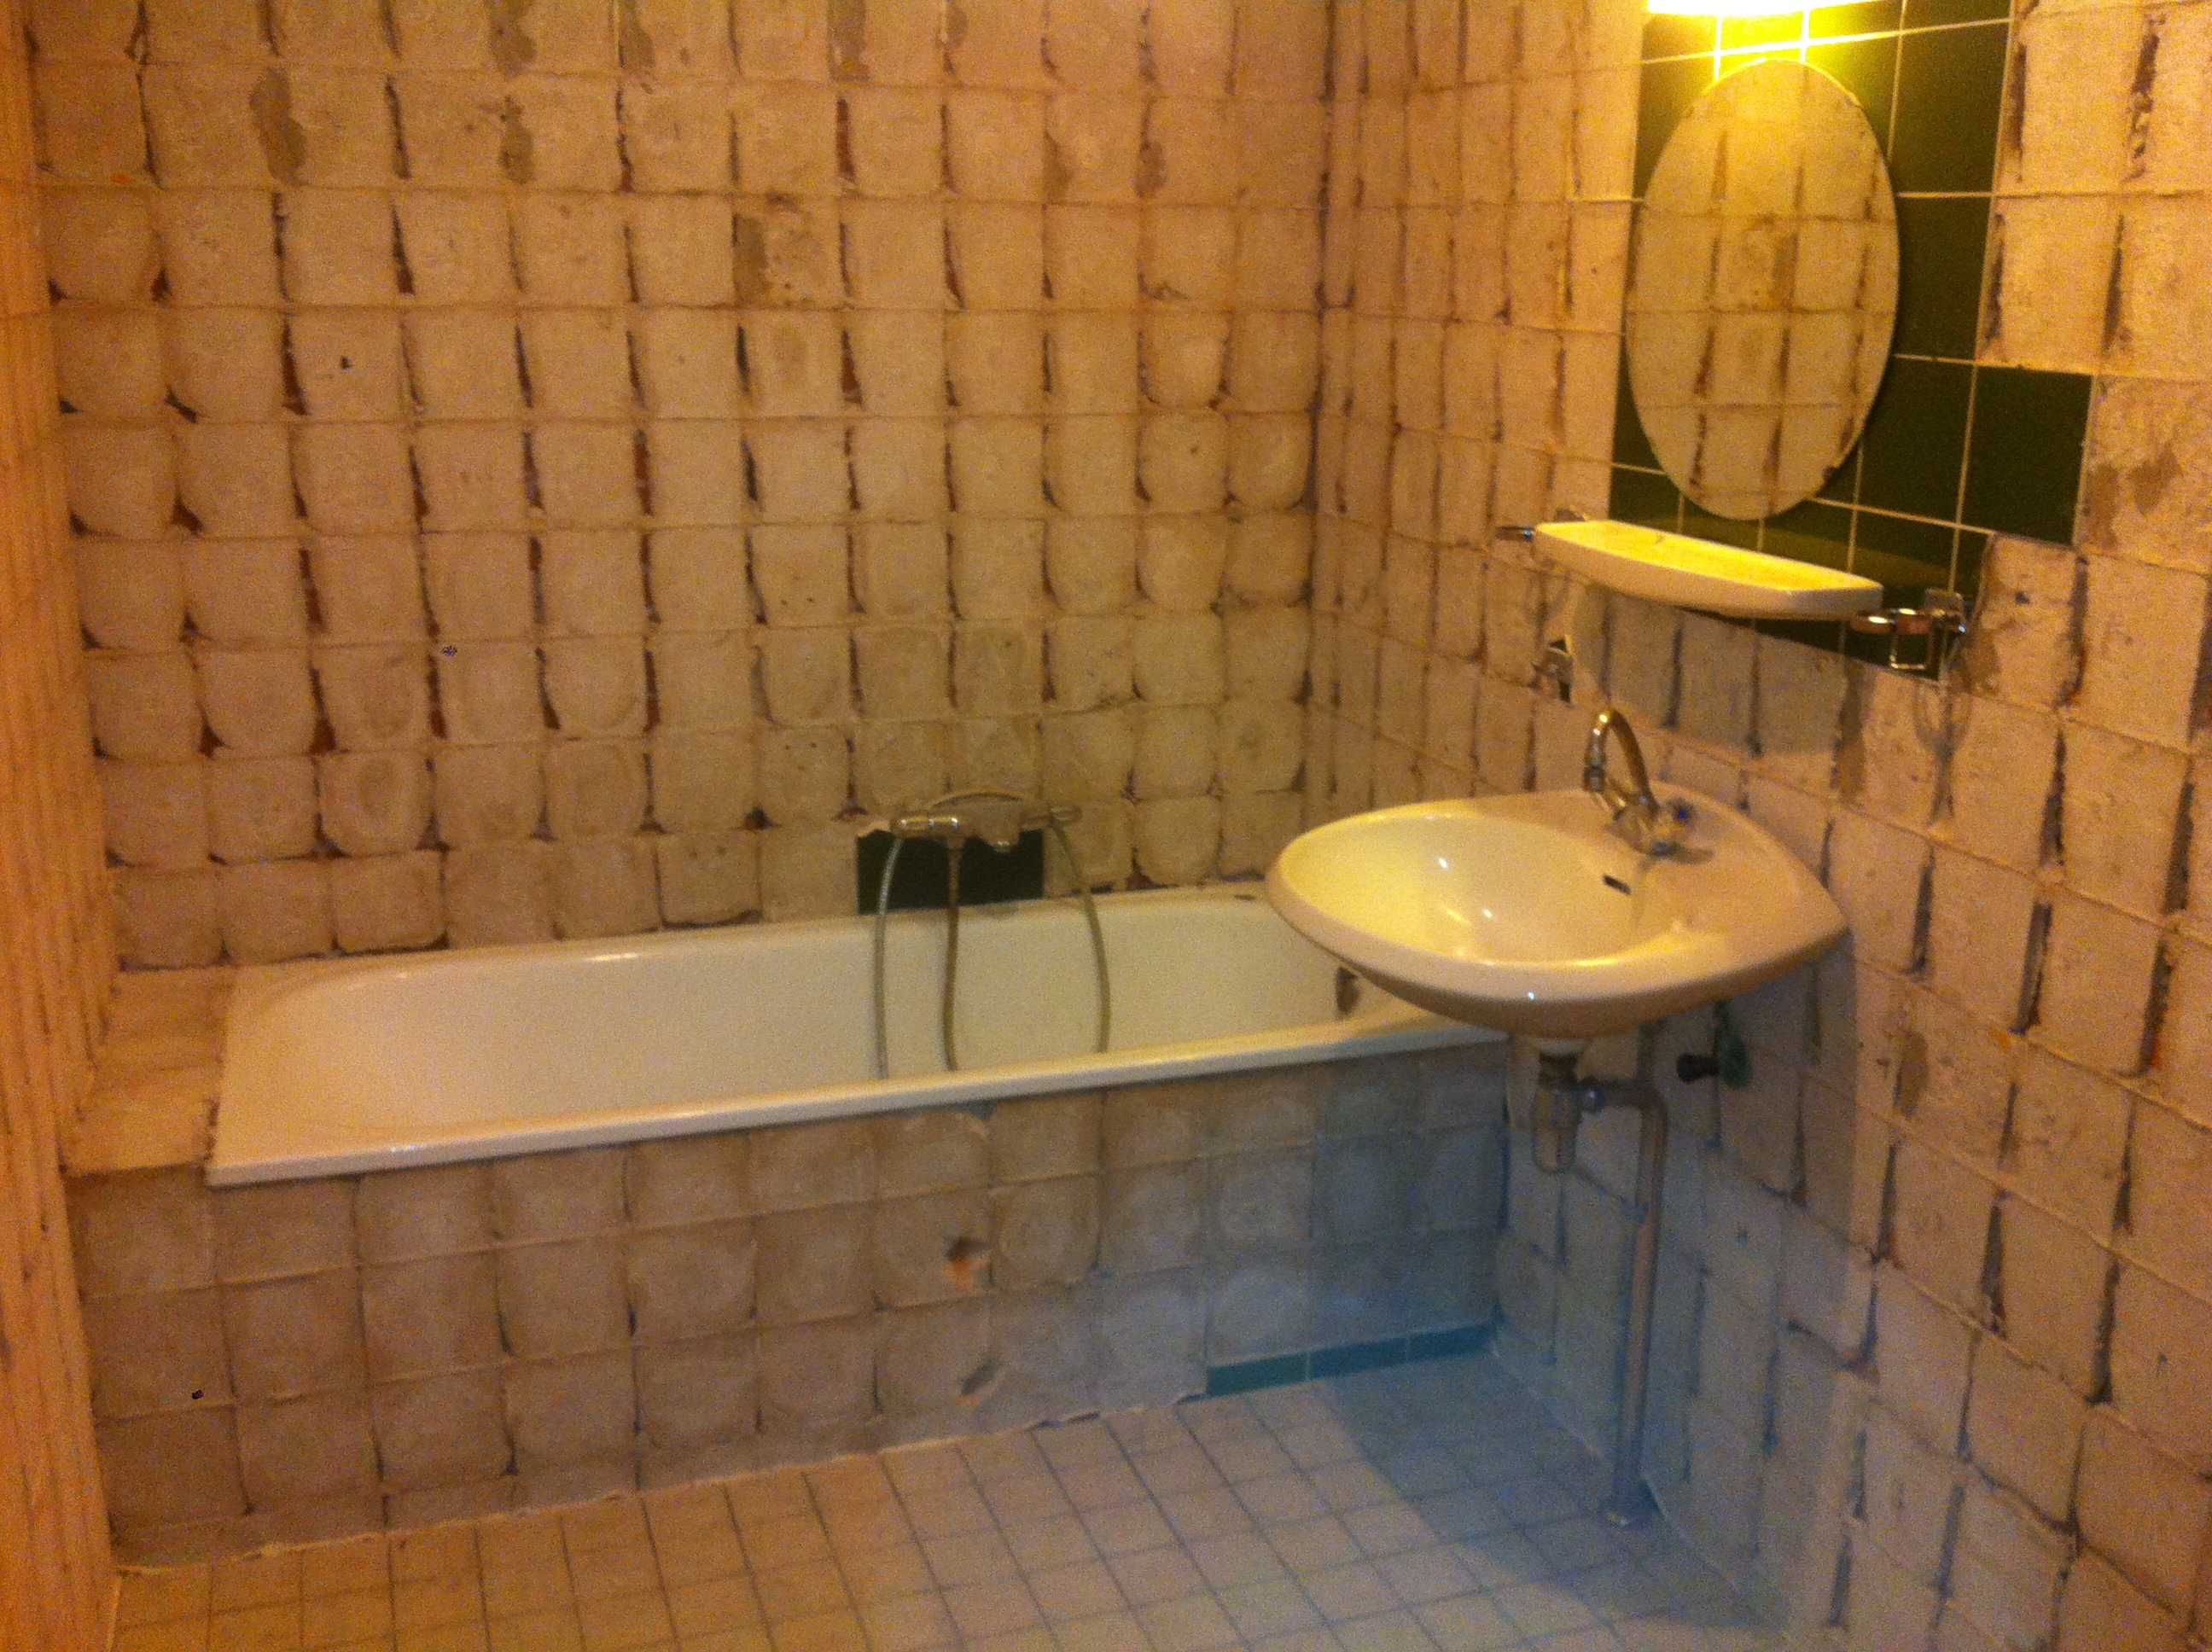 Badkamer voor renovatie, van bad naar inloopdouche